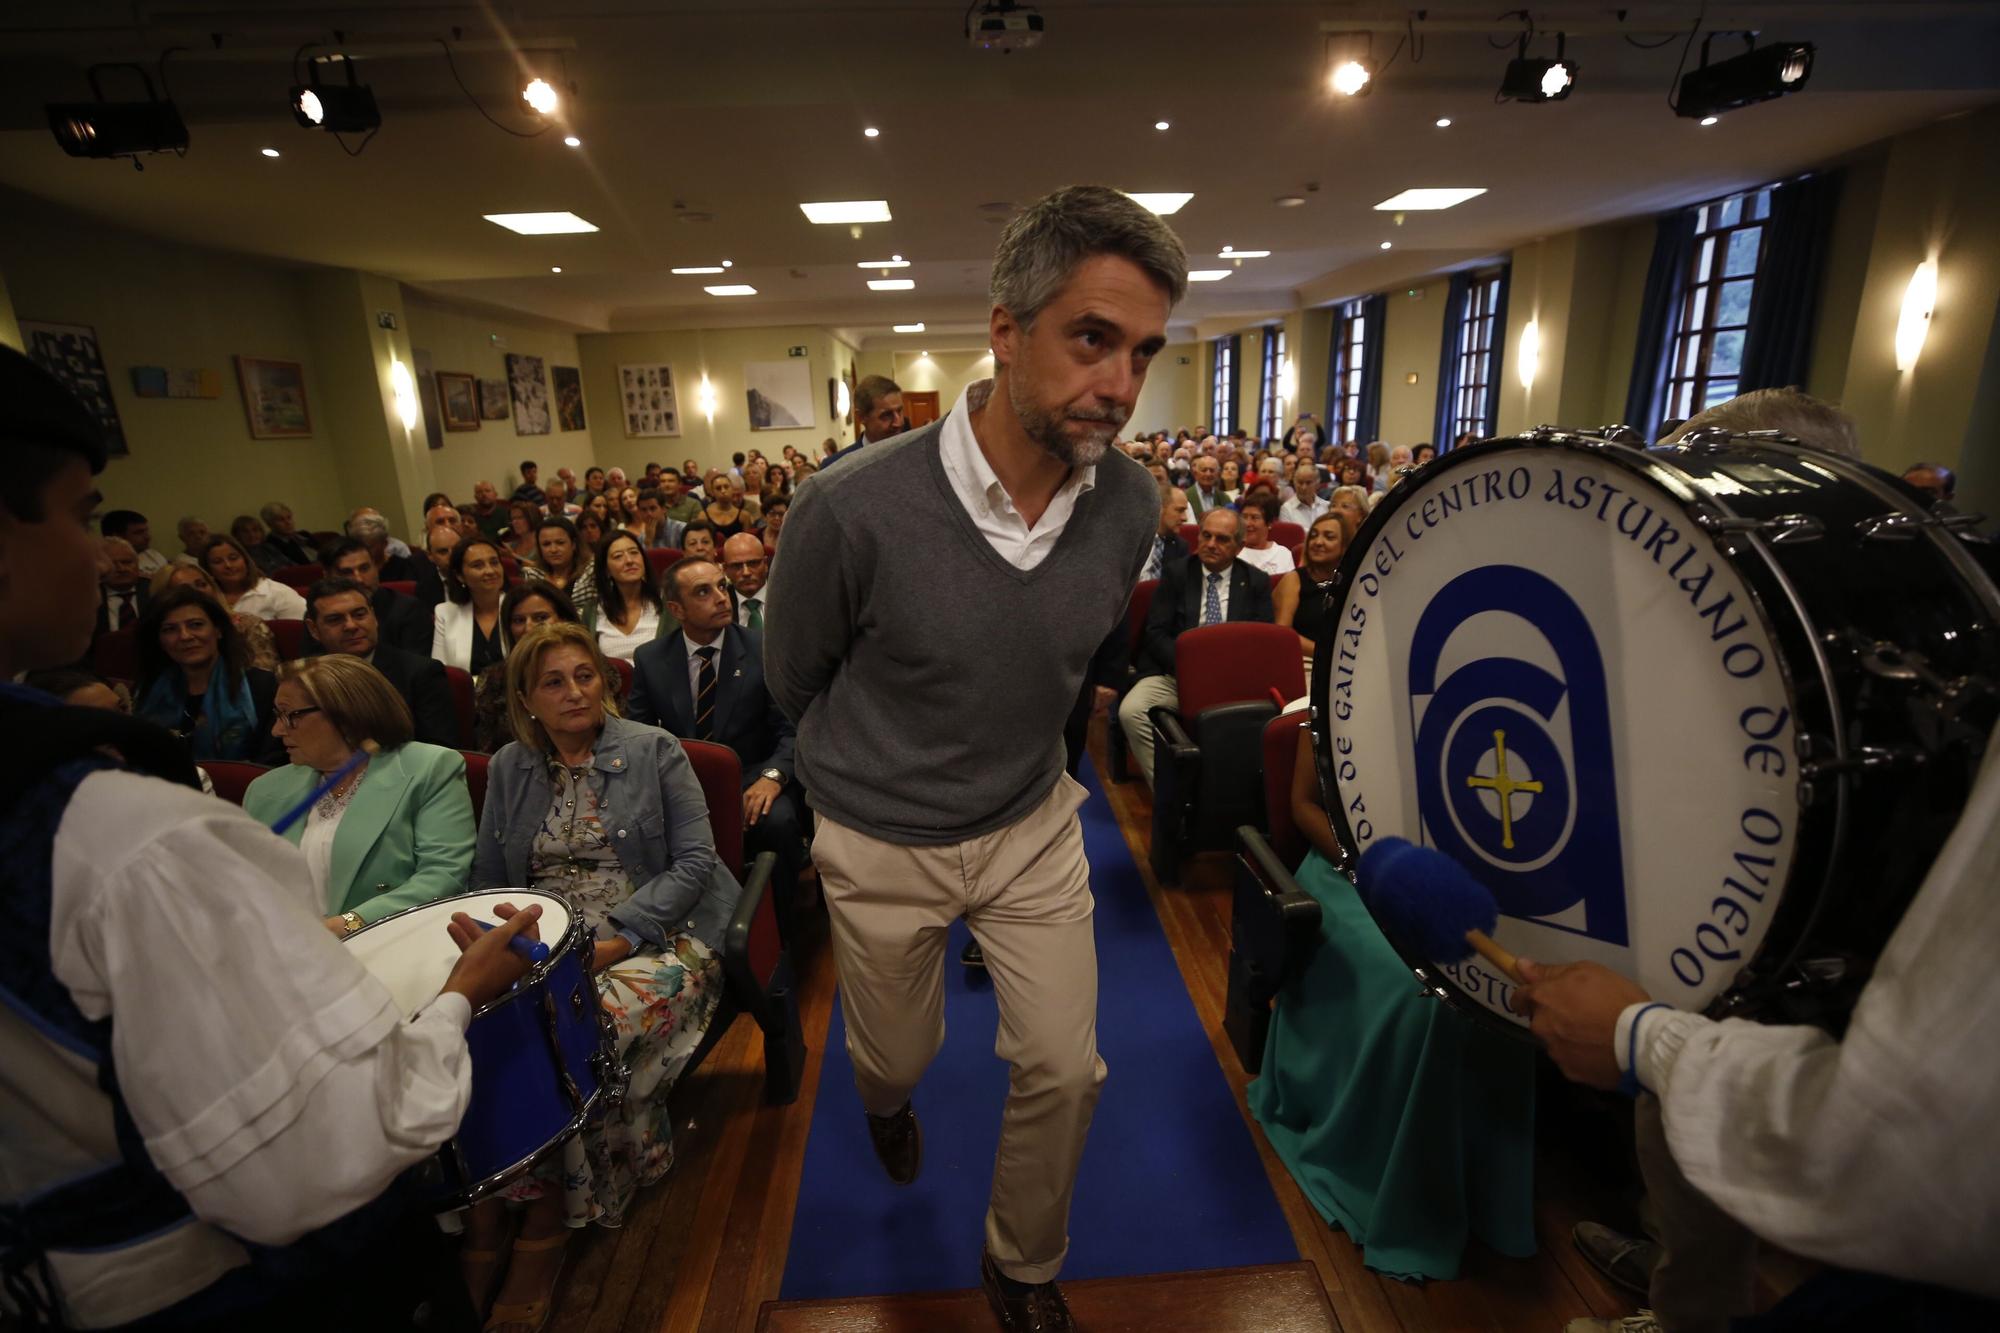 EN IMÁGENES: Carlos Franganillo, pregonero de las fiestas del Centro Asturiano de Oviedo